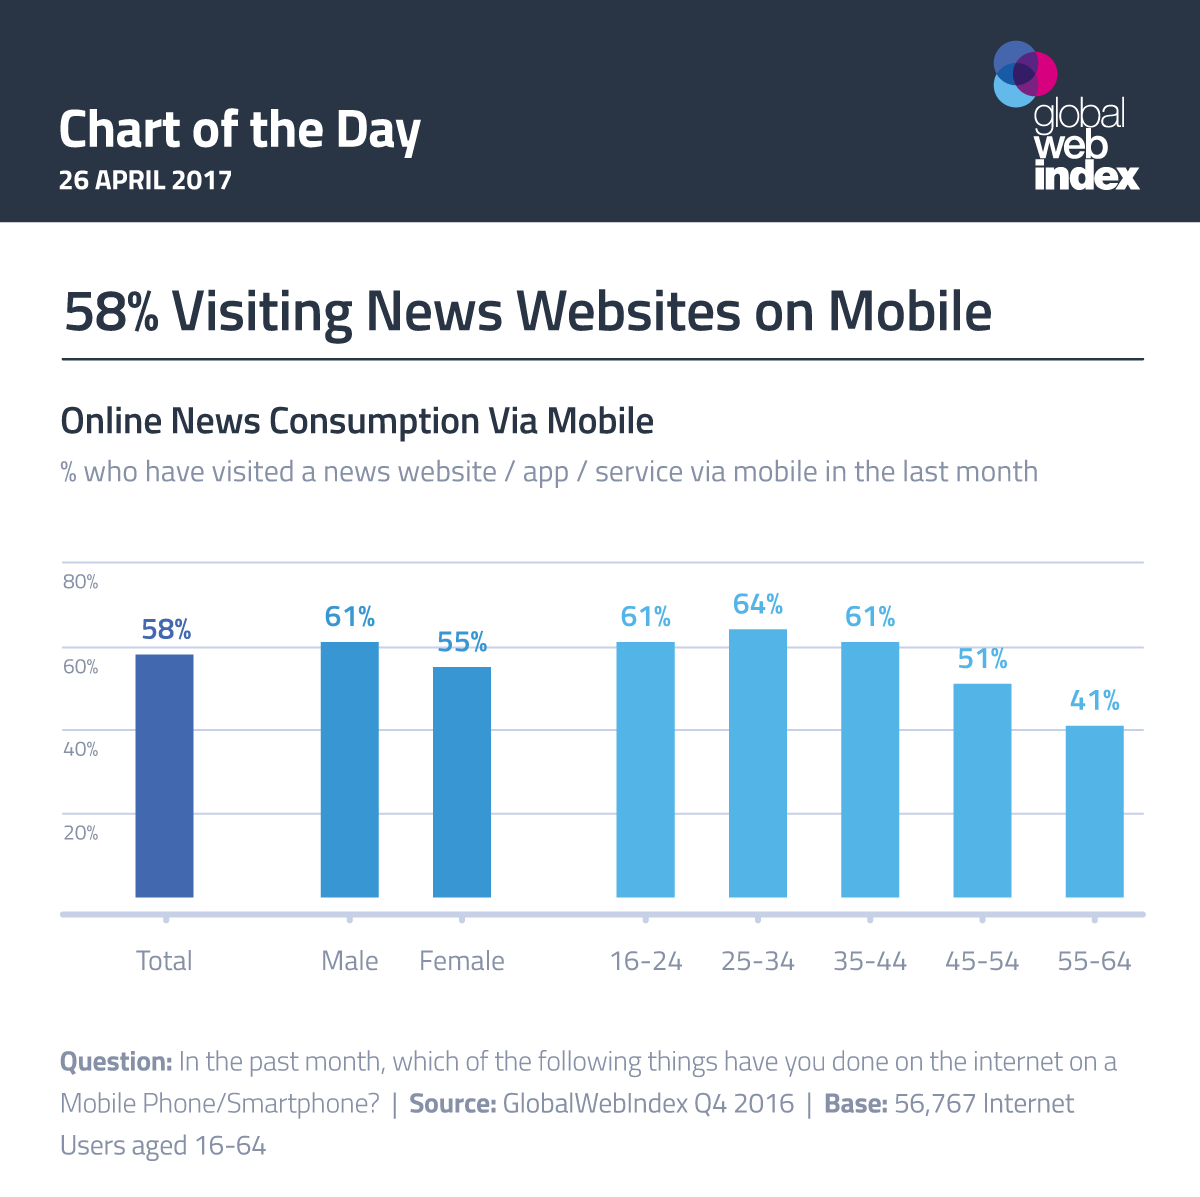 58% Visiting News Websites on Mobile